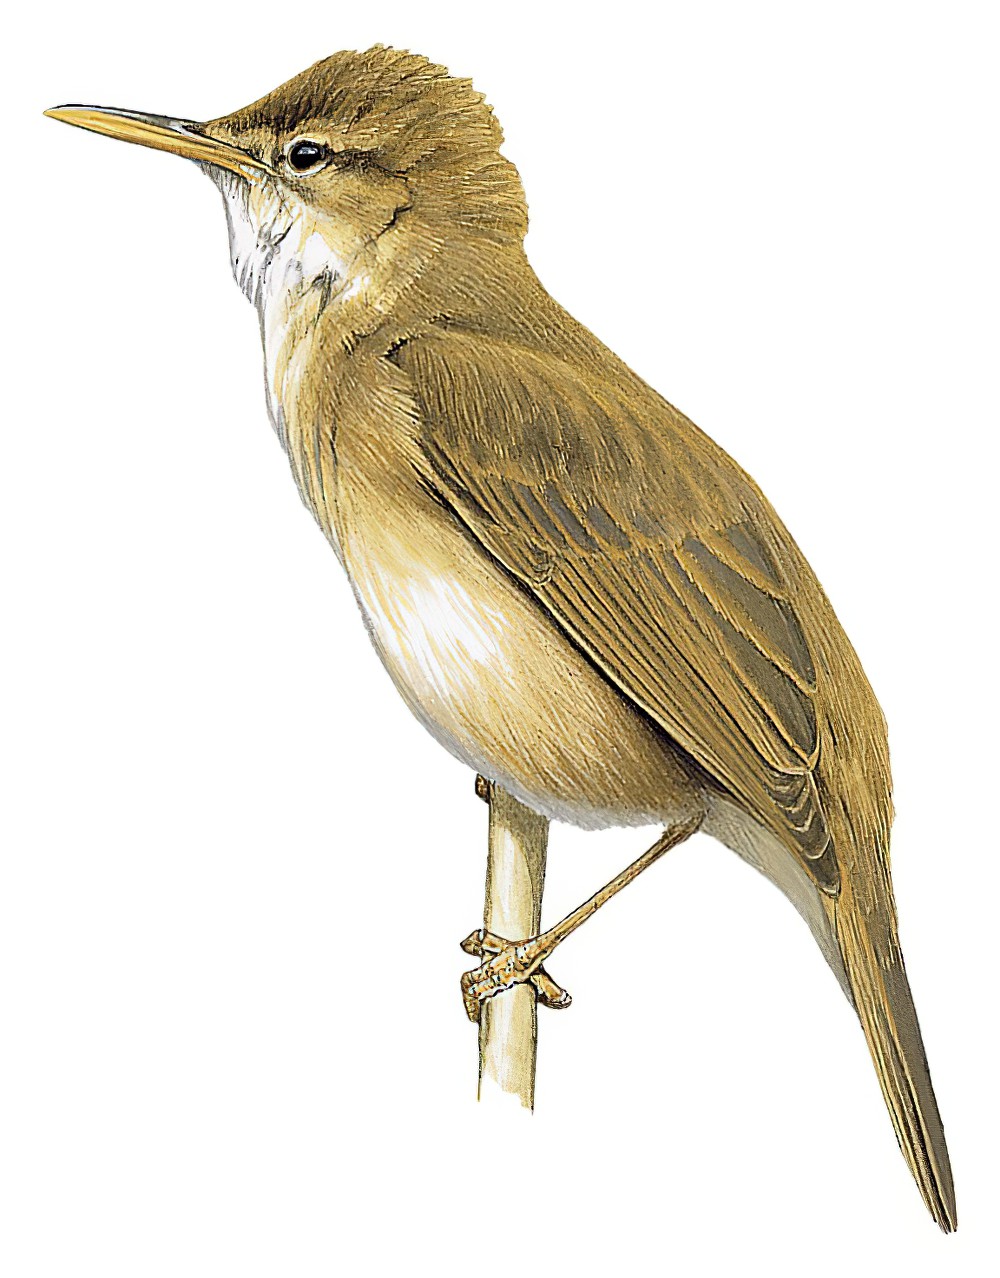 Large-billed Reed Warbler / Acrocephalus orinus